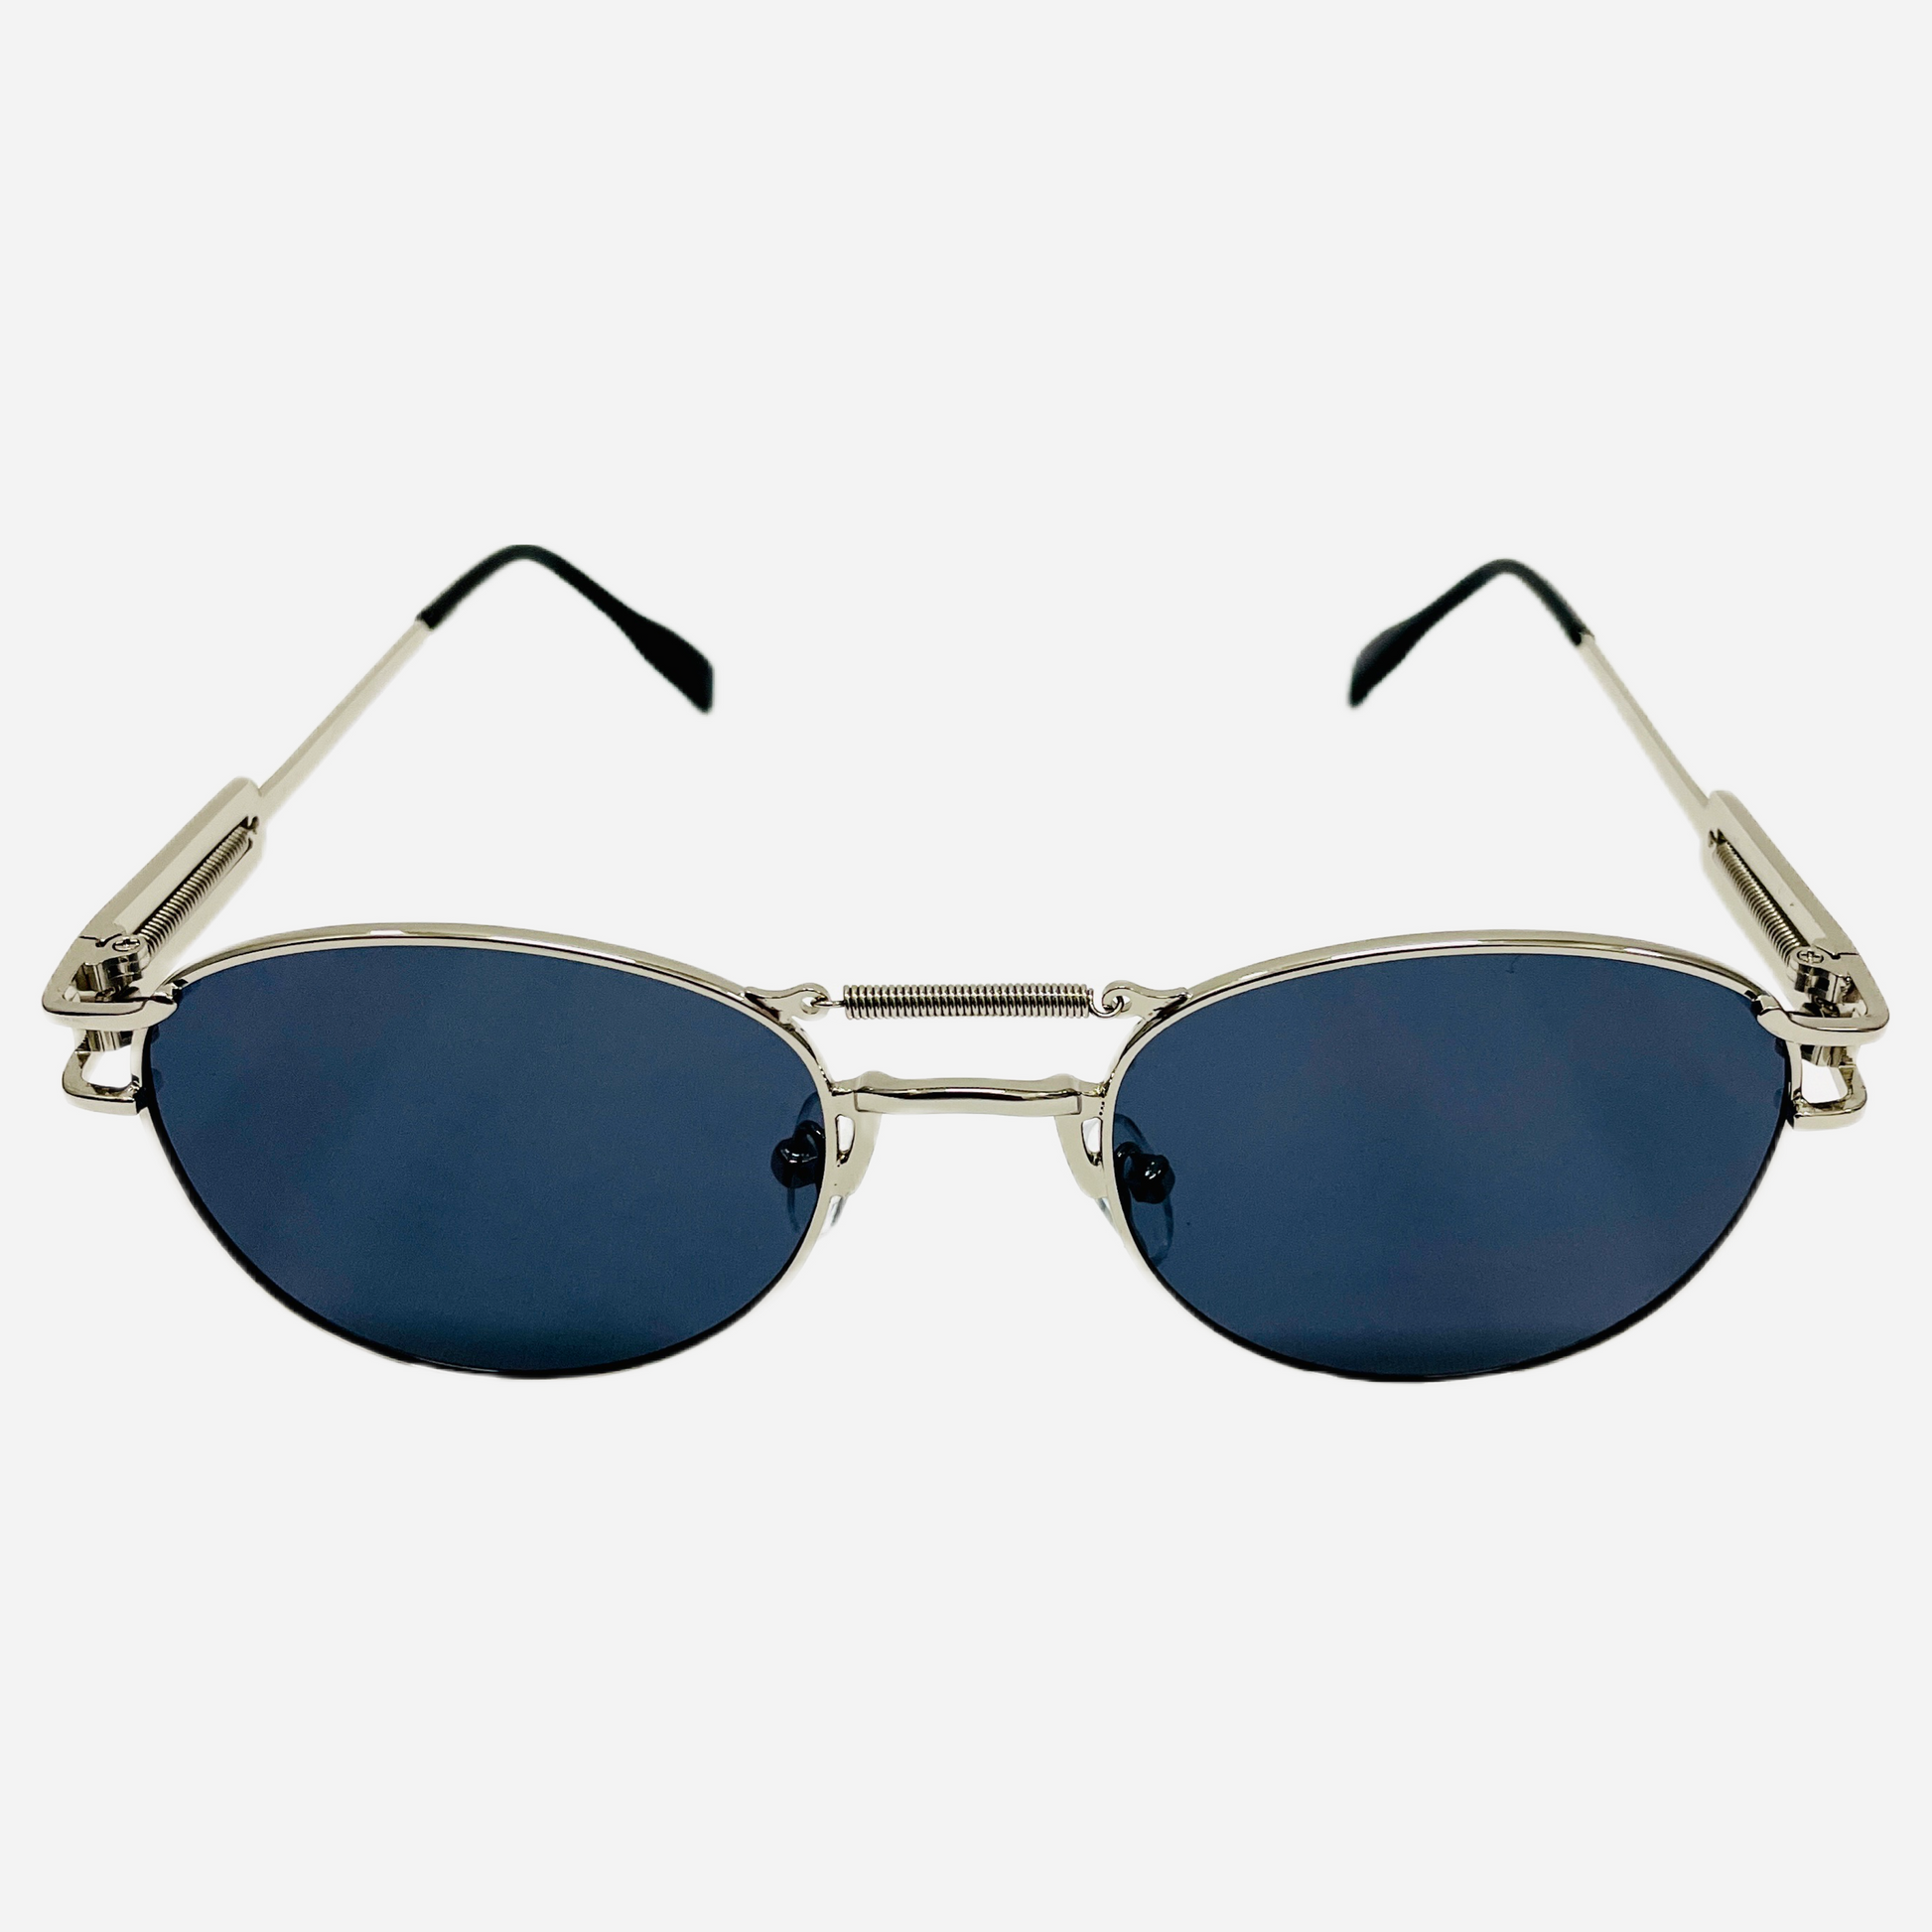 Vintage Jean Paul Gaultier Sonnenbrille Sunglasses Model 56-5107-silver-front-3